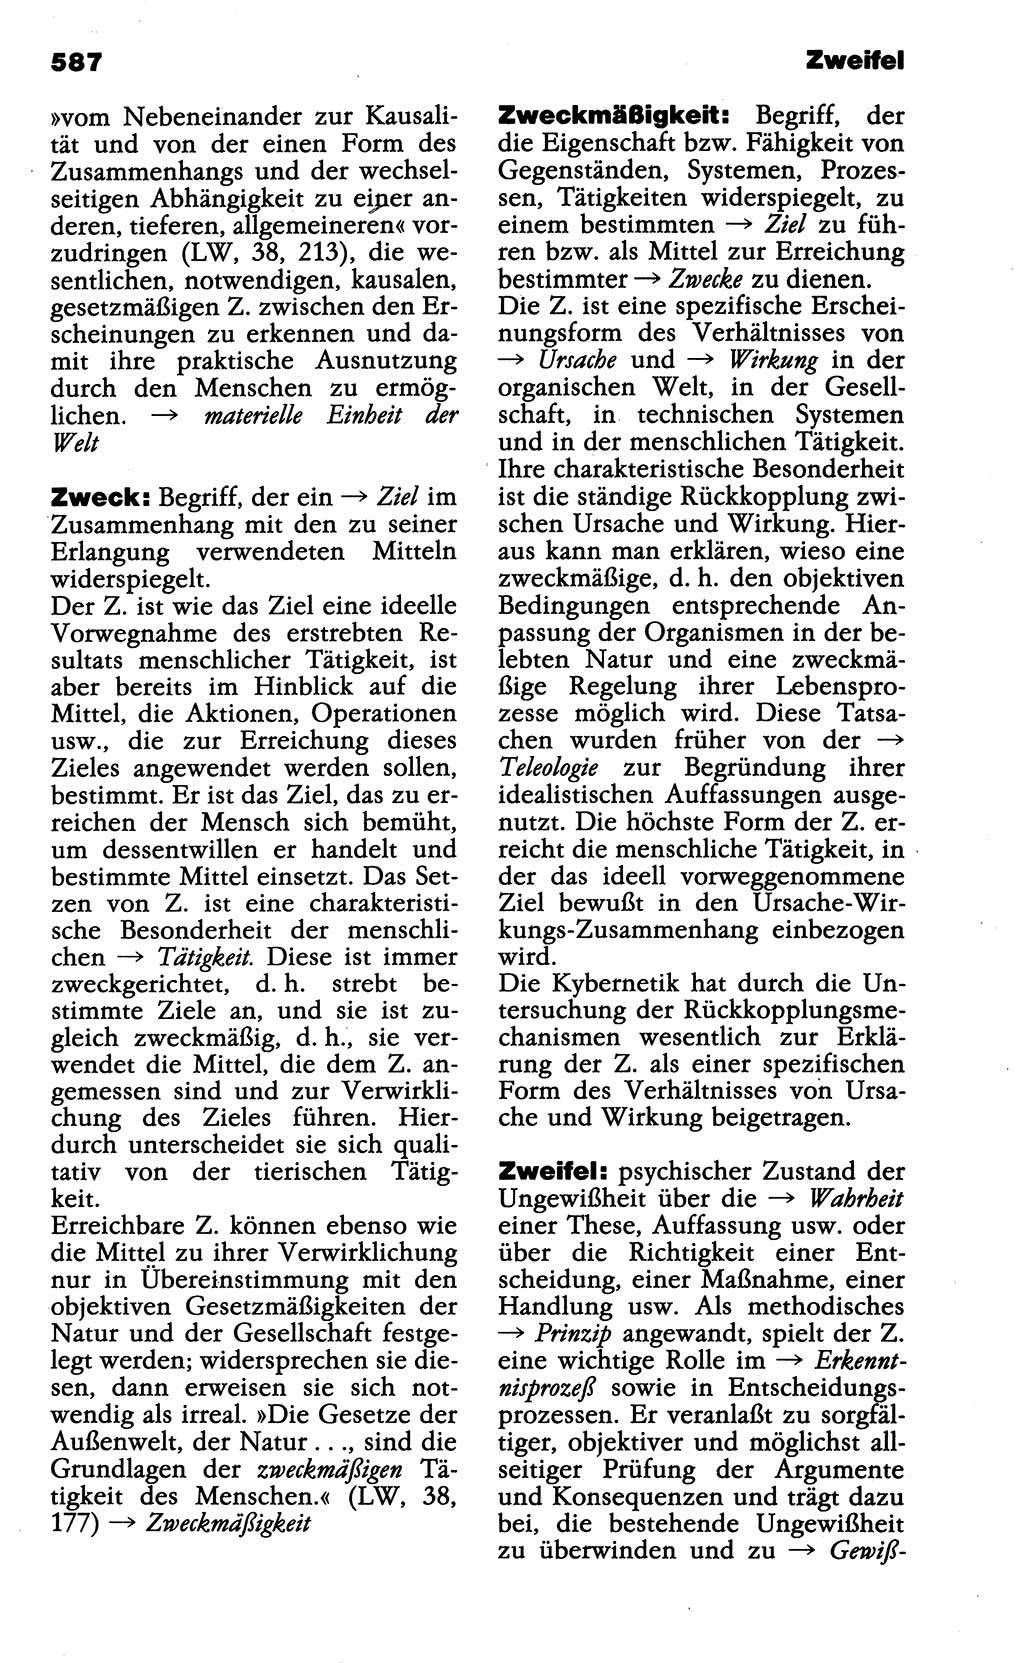 Wörterbuch der marxistisch-leninistischen Philosophie [Deutsche Demokratische Republik (DDR)] 1985, Seite 587 (Wb. ML Phil. DDR 1985, S. 587)